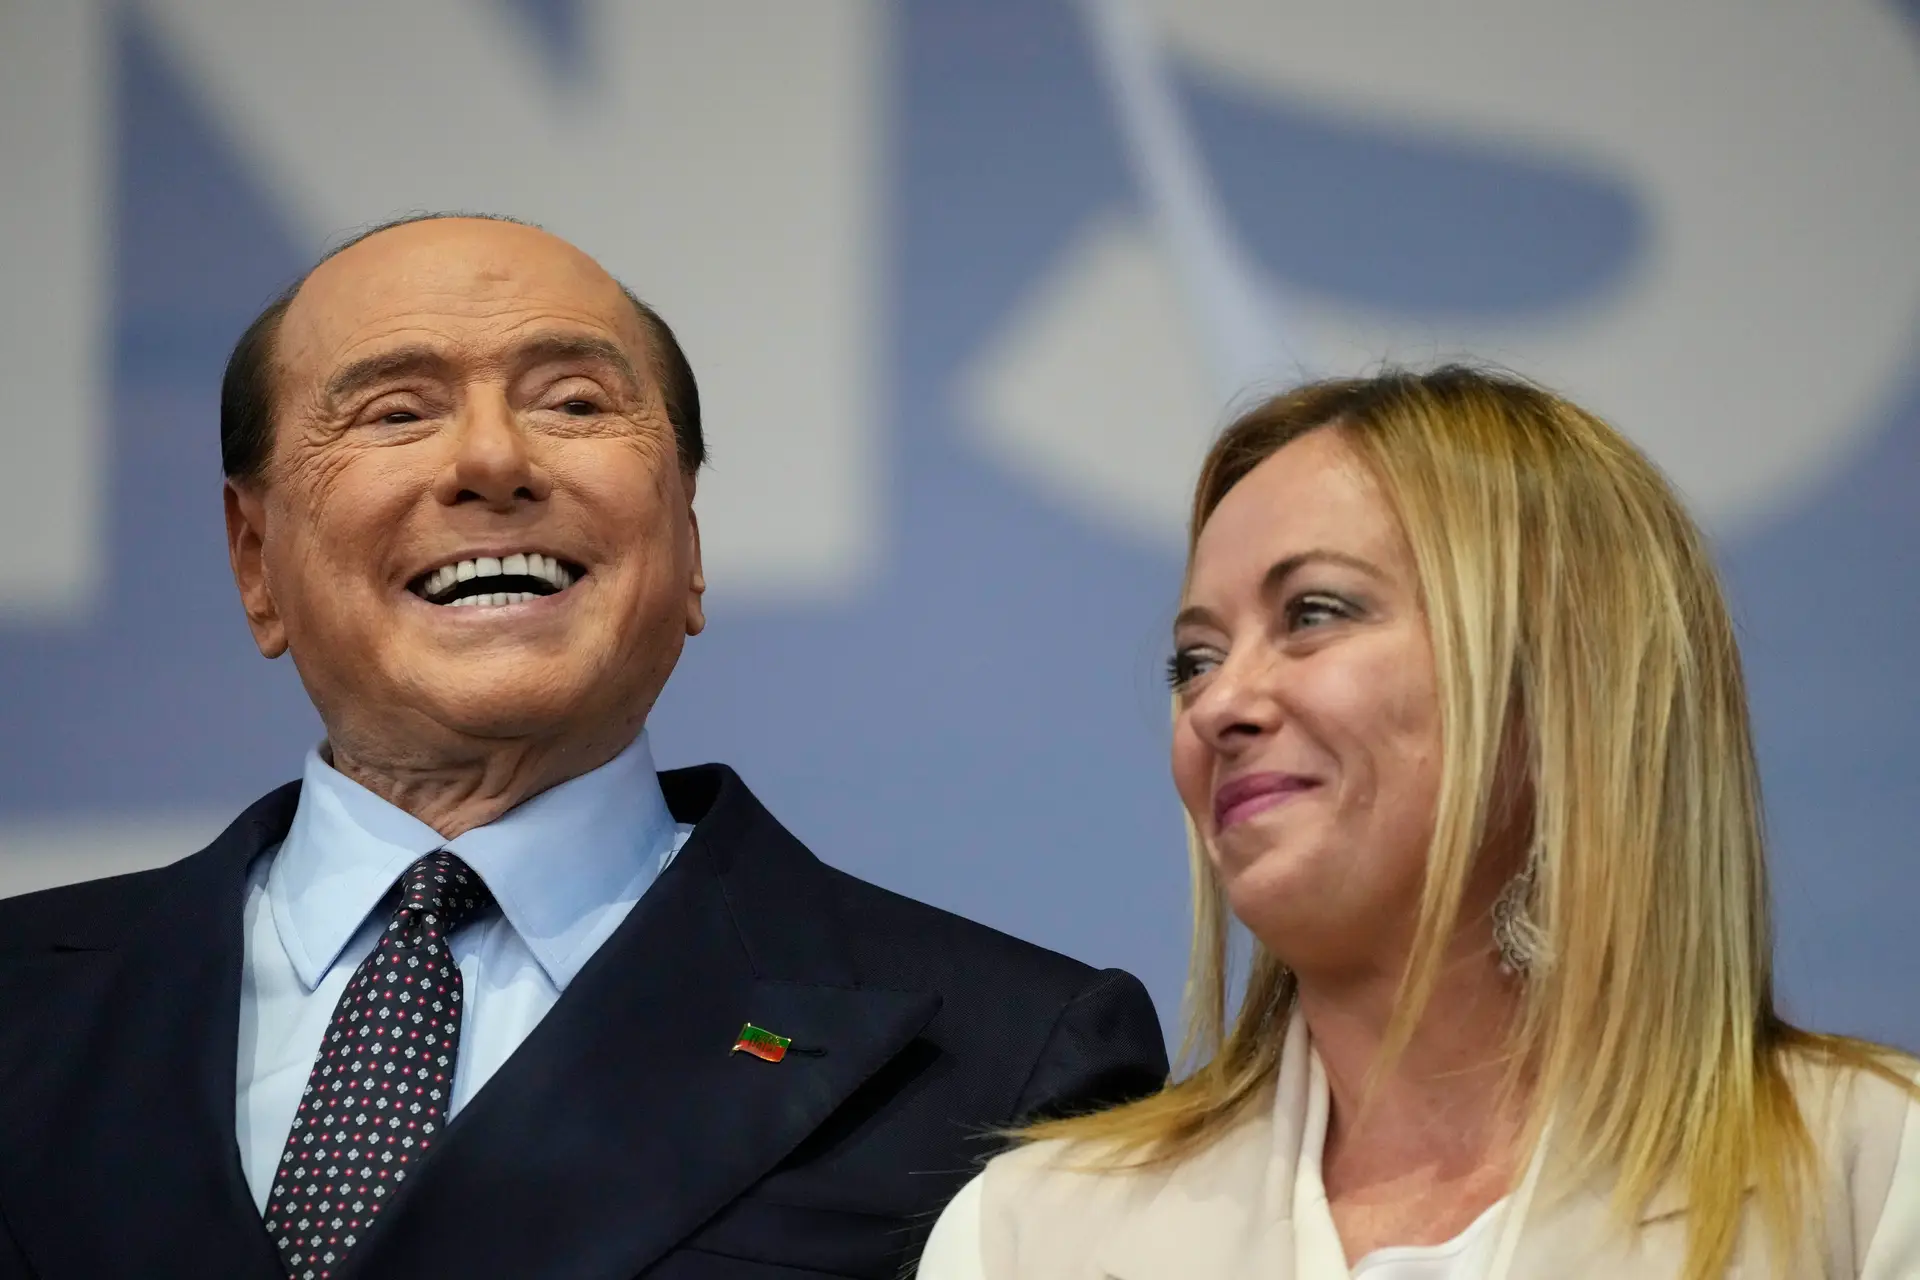 Eleições em Itália: Meloni e Berlusconi reconciliam-se após zanga